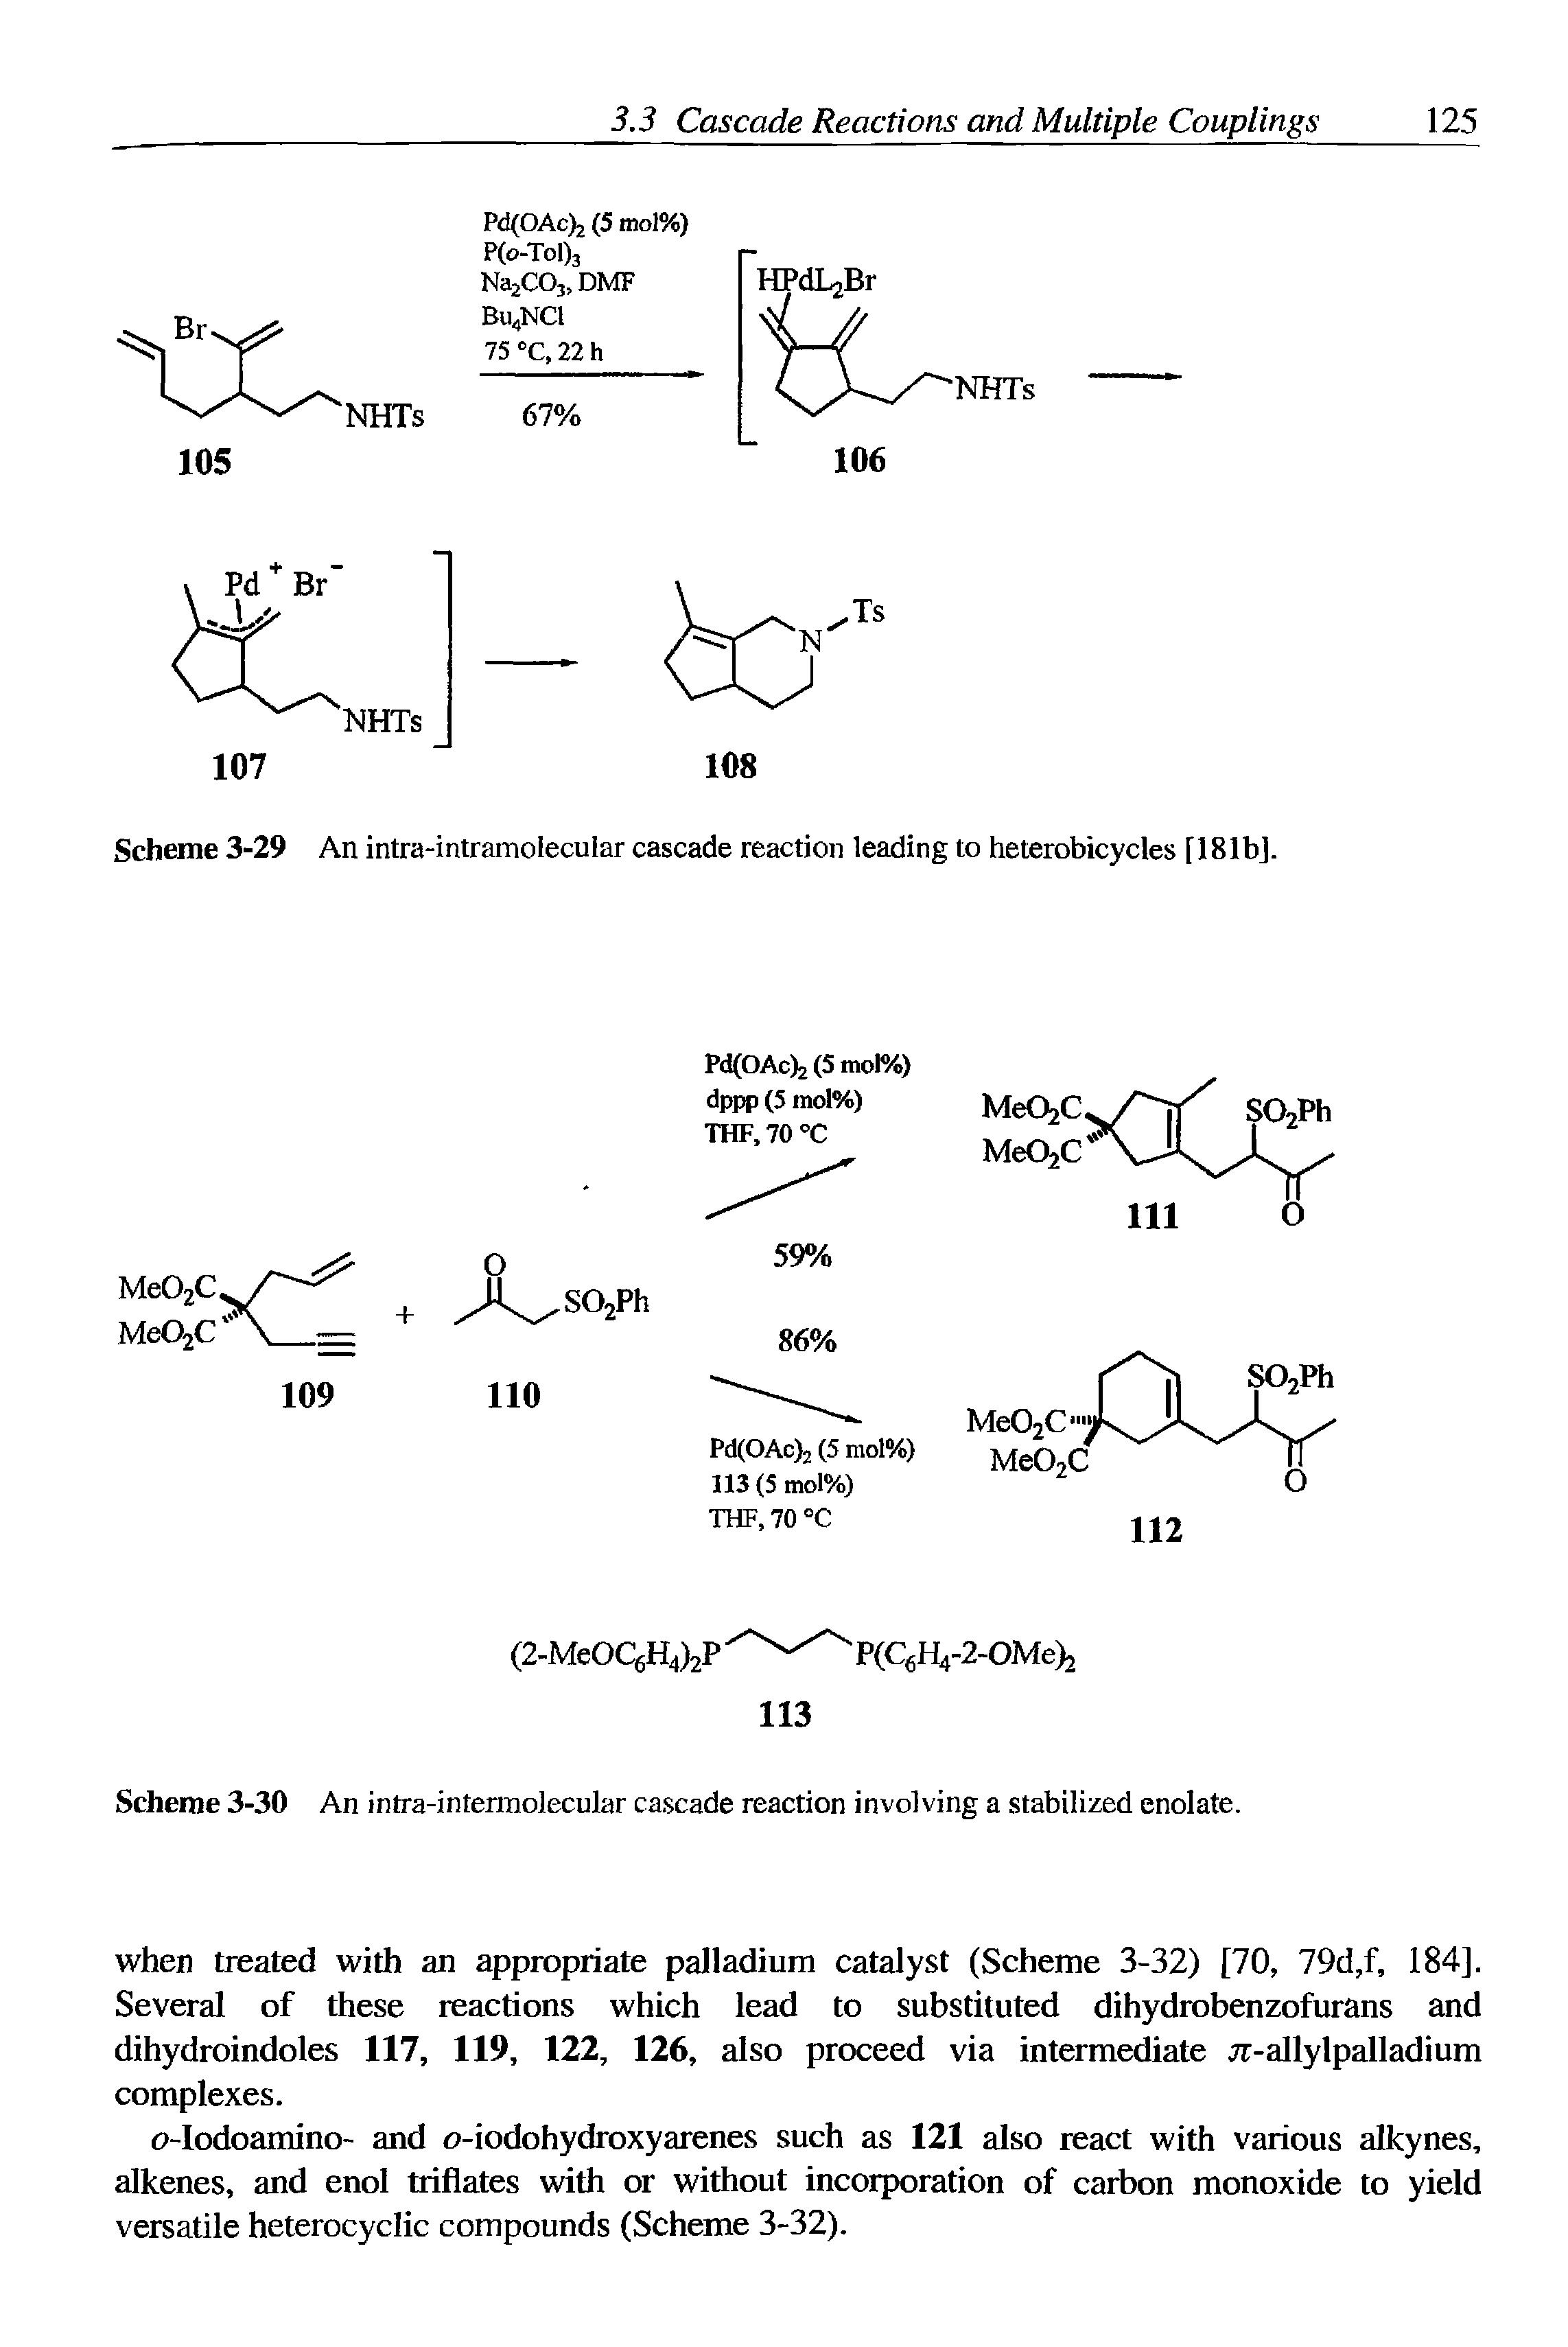 Scheme 3-30 An intra-intermolecular cascade reaction involving a stabilized enolate.